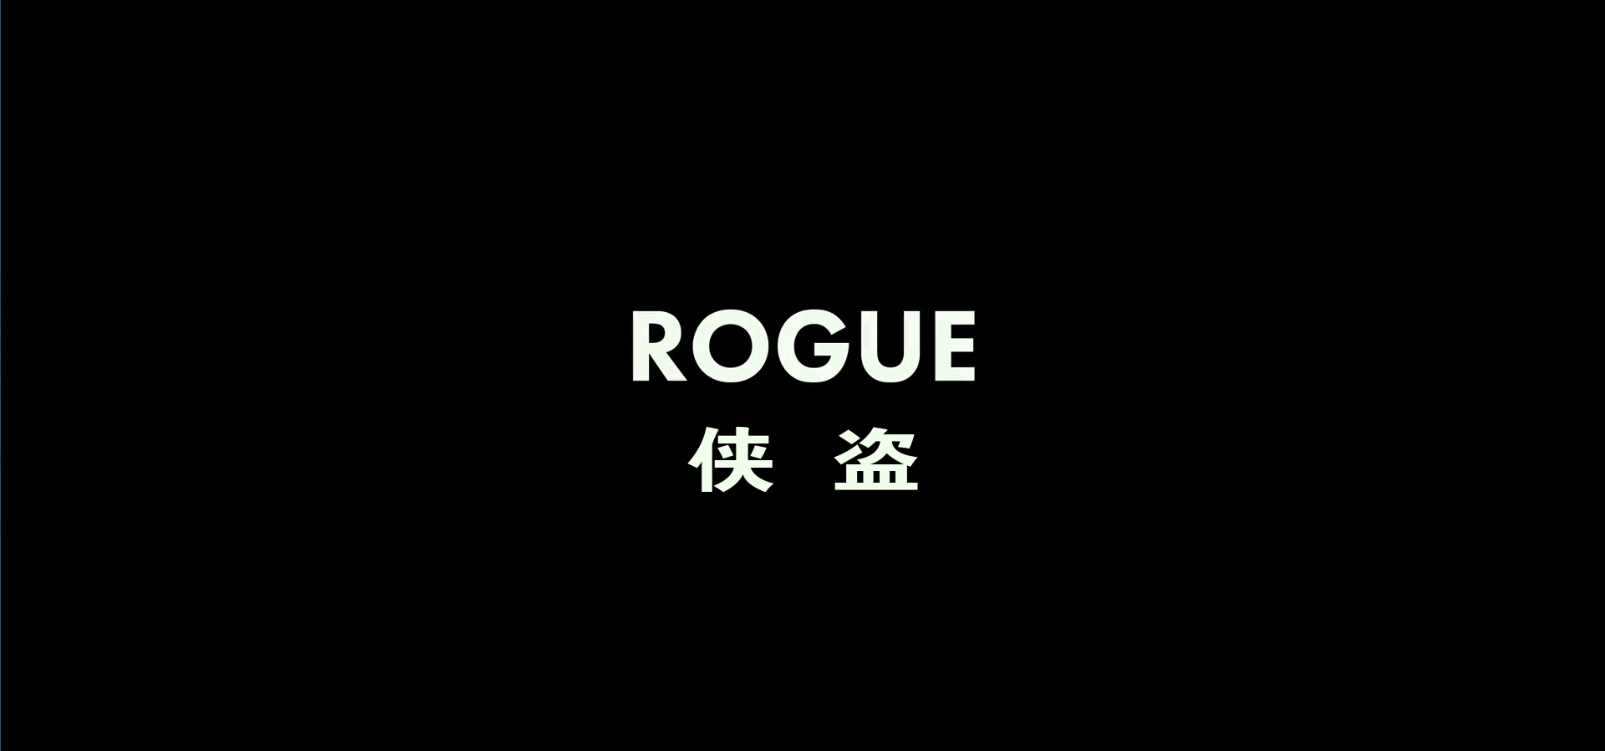 [ 侠盗 / 重装救援：全境猎杀(台)   ] 【DIY/简英繁特效四字幕】 Rogue 2020 BluRay 1080p AVC DTS-HD MA5.1-GeekArt@CHDBits  [45.85 GB]-2.png